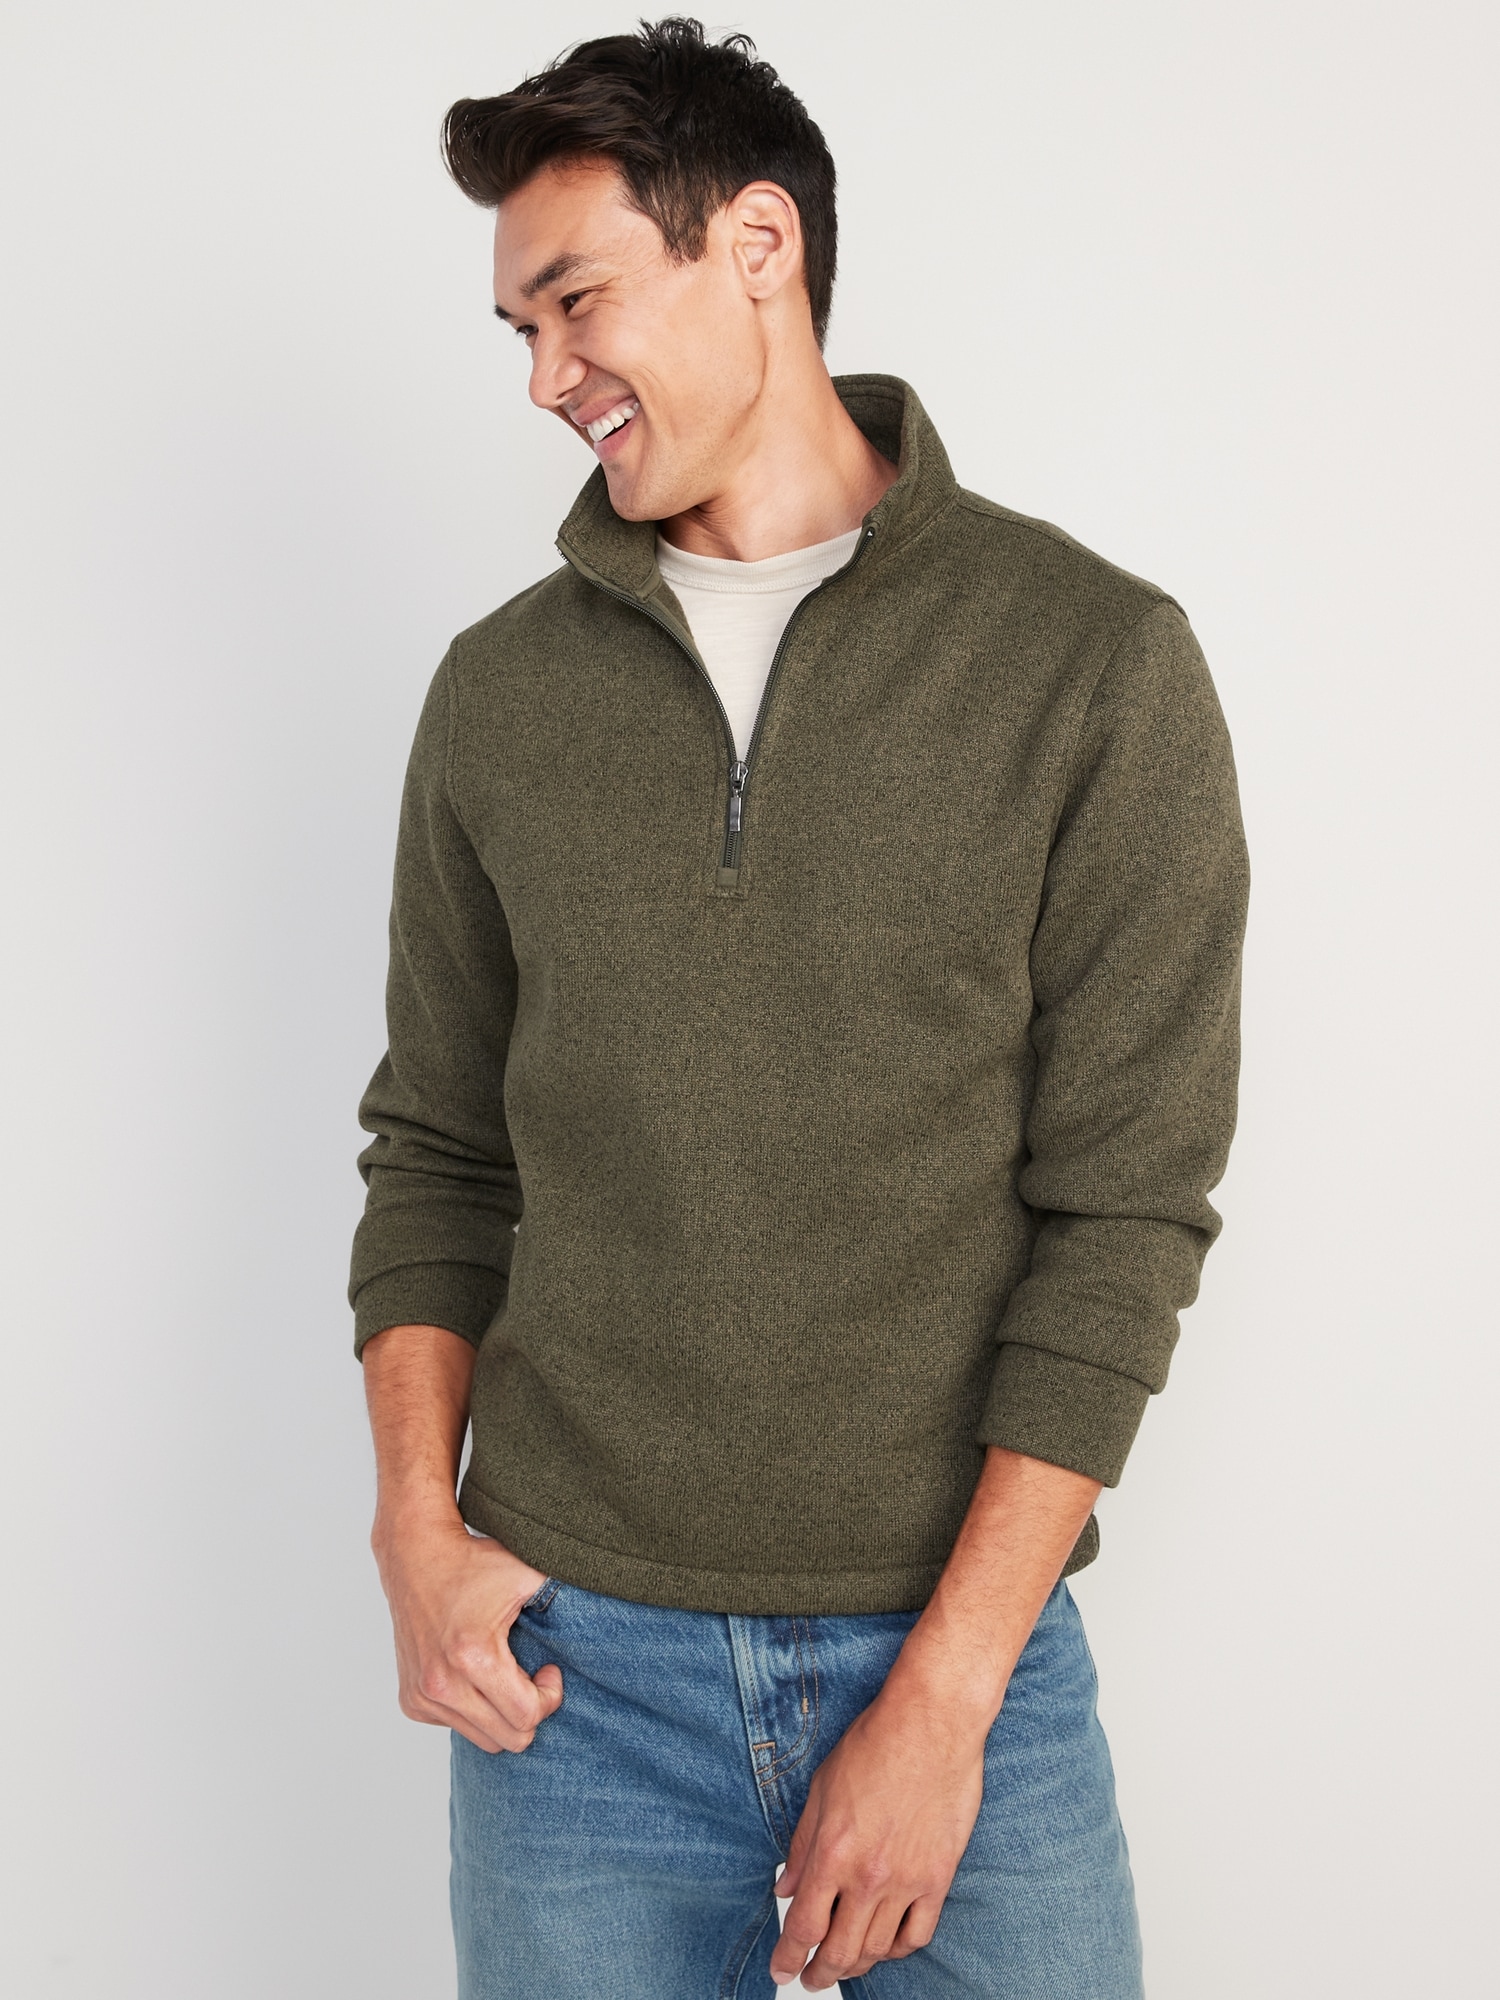 Old Navy Sweater-Fleece Mock-Neck Quarter-Zip Sweatshirt for Men green. 1